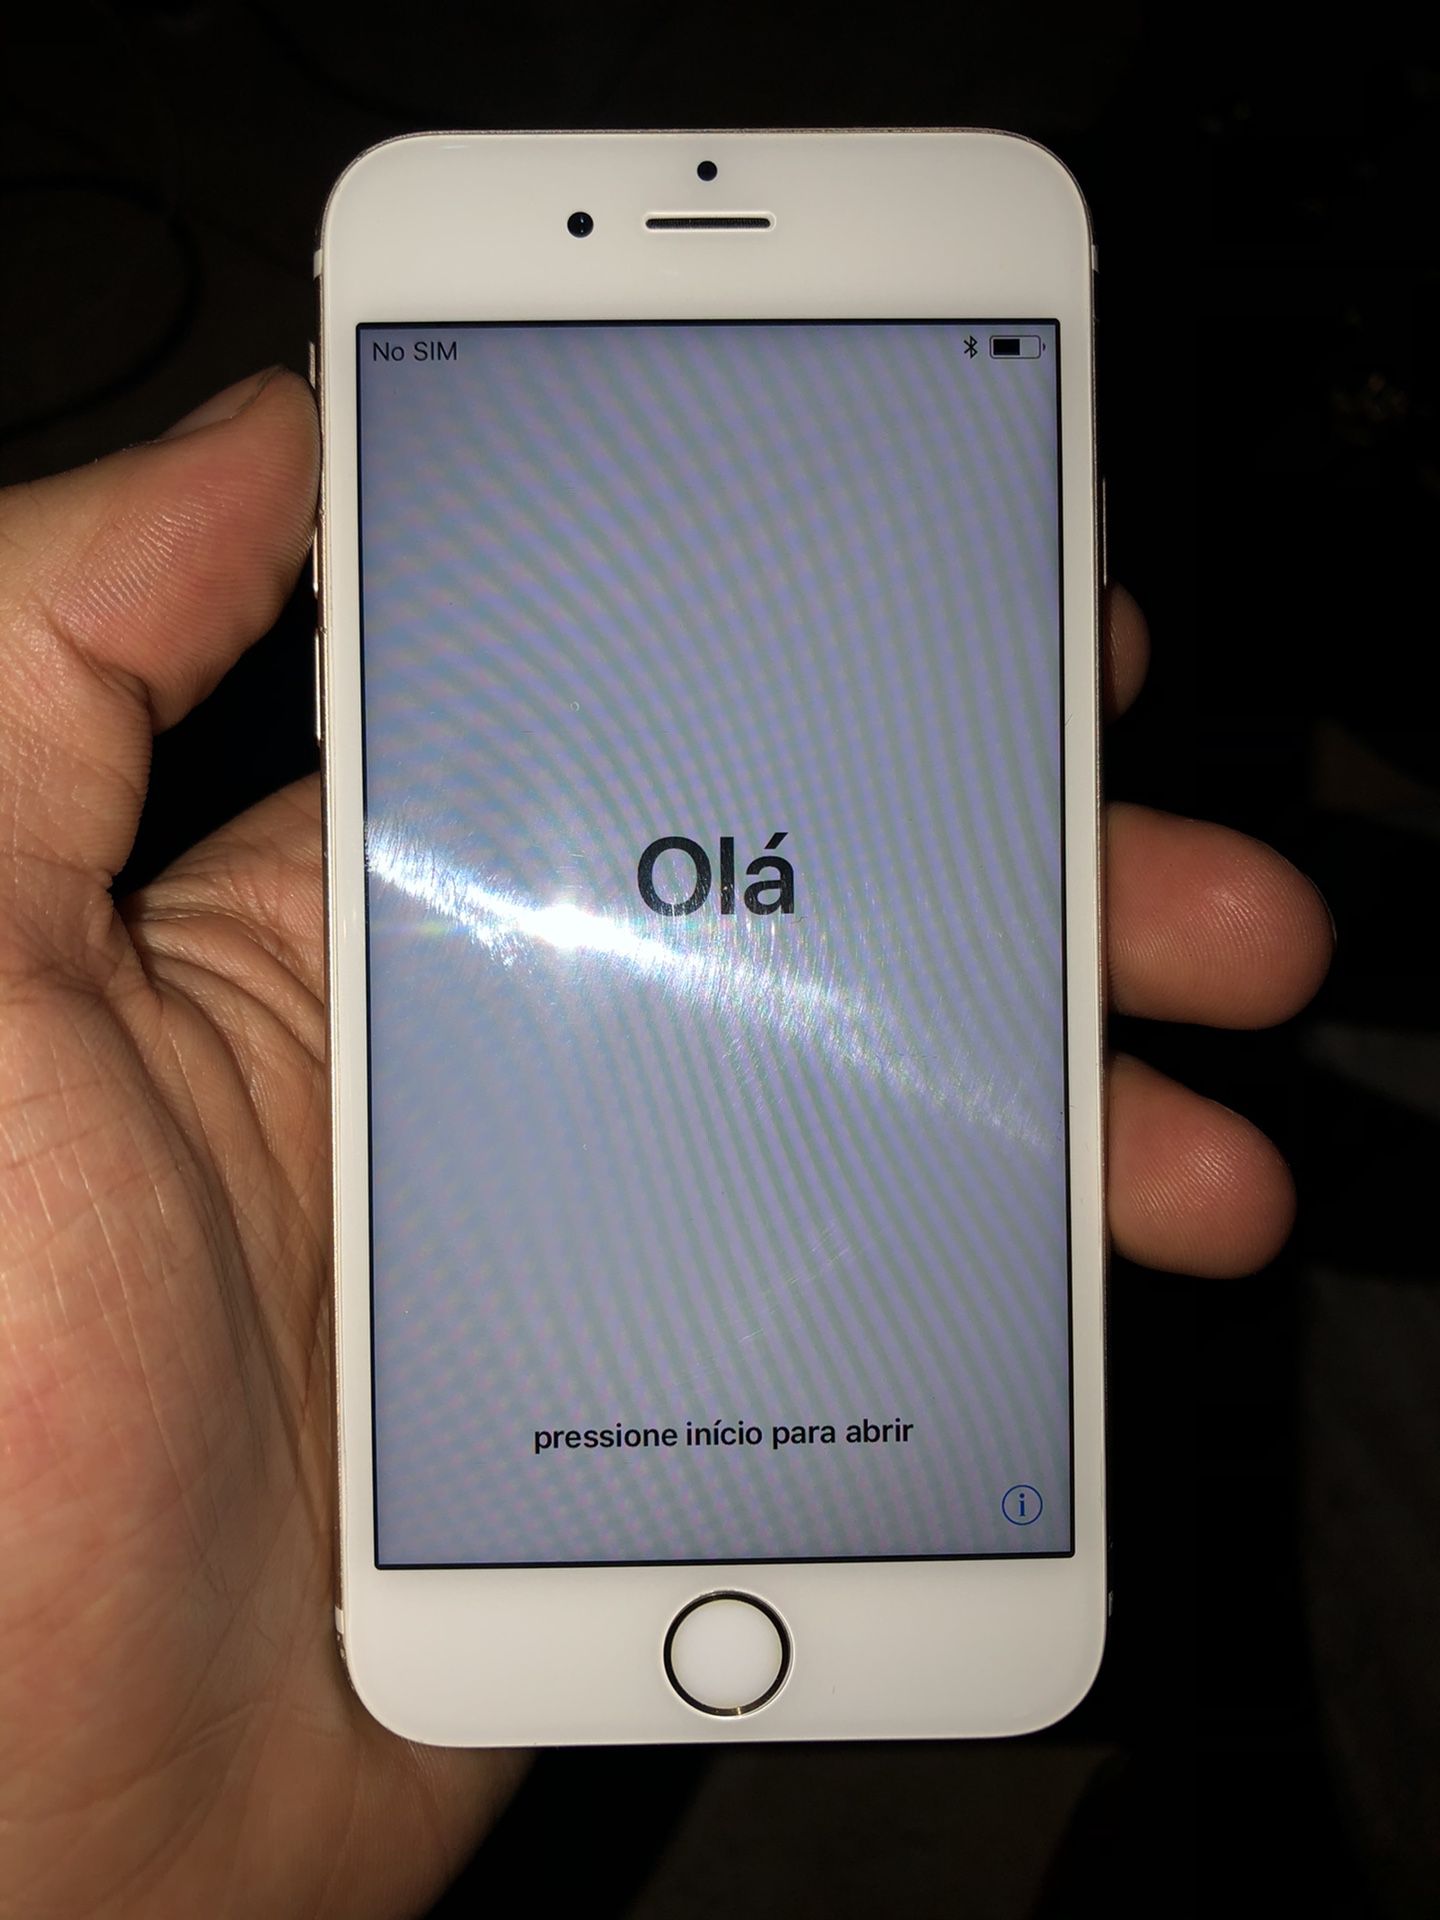 iPhone 6s iCloud locked 64gb